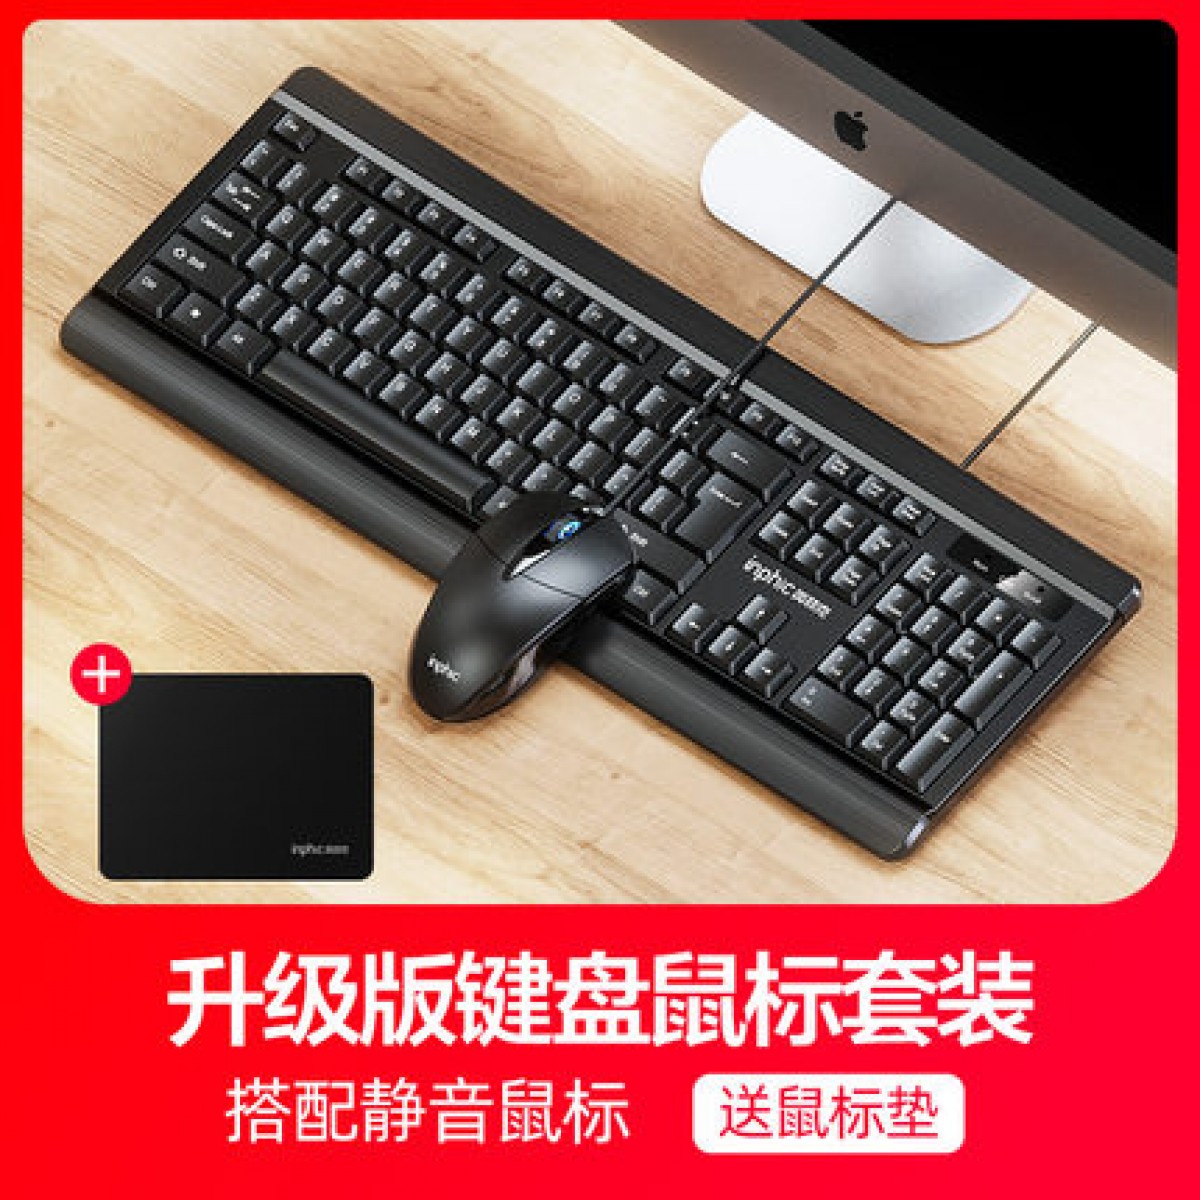 英菲克v580键盘鼠标套装有线台式电脑家用机械手感USB外接笔记本防水静音无声办公专用打字外设电竞游戏键鼠